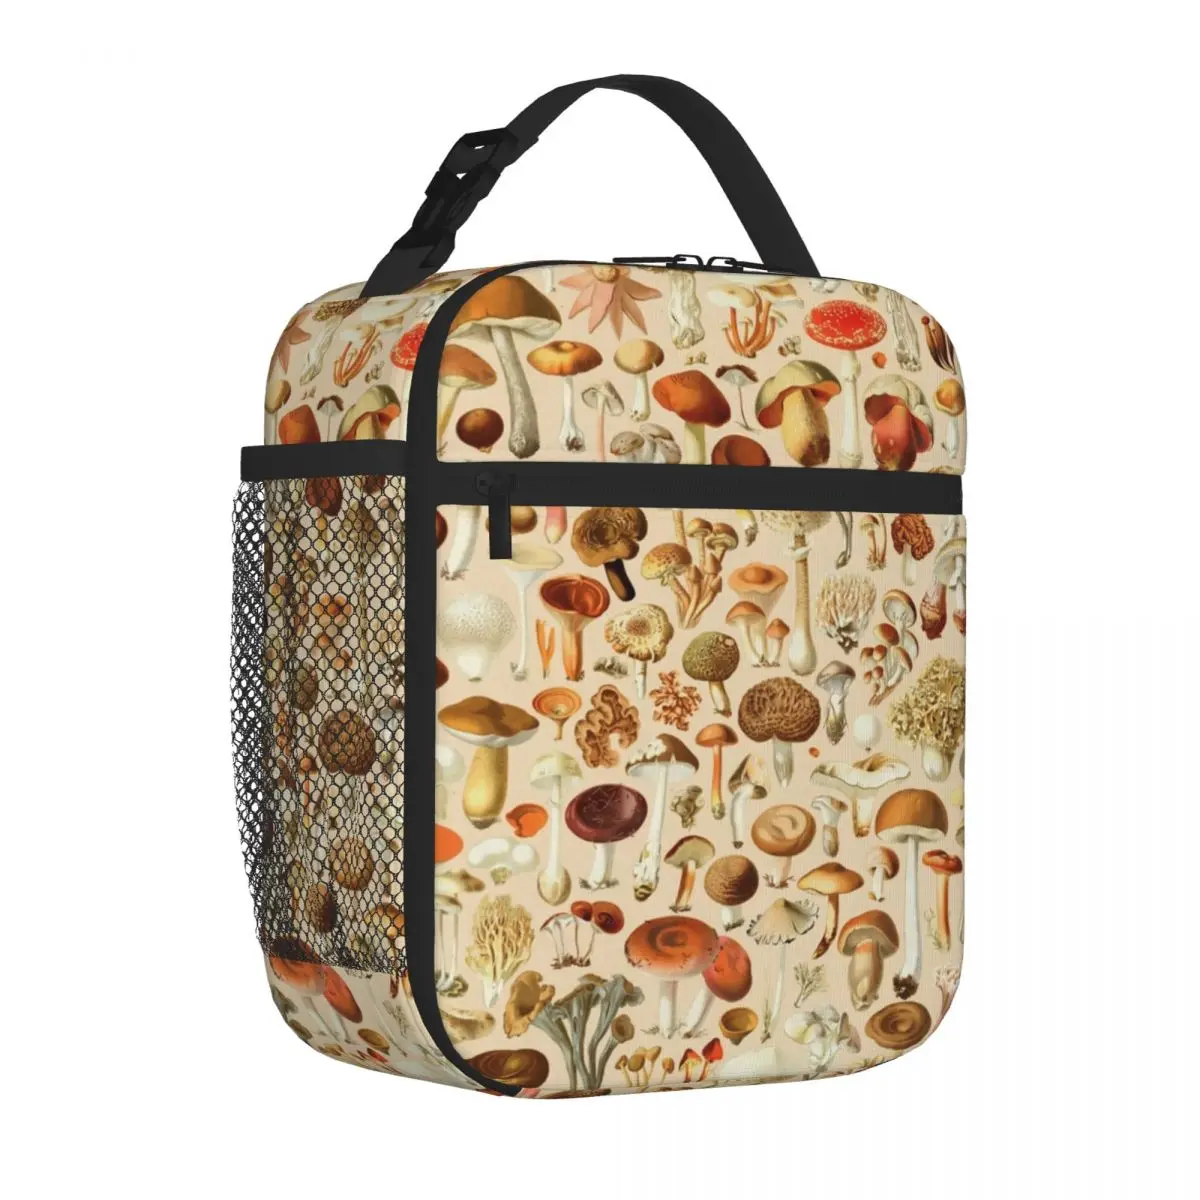 Vintage Mantar Tasarımları Koleksiyonu Yalıtımlı Öğle Yemeği Çantaları Termal soğutucu çanta Termal yemek kabı yemek taşıma çantası Kadın Çocuklar için Çalışmak Görüntü 0